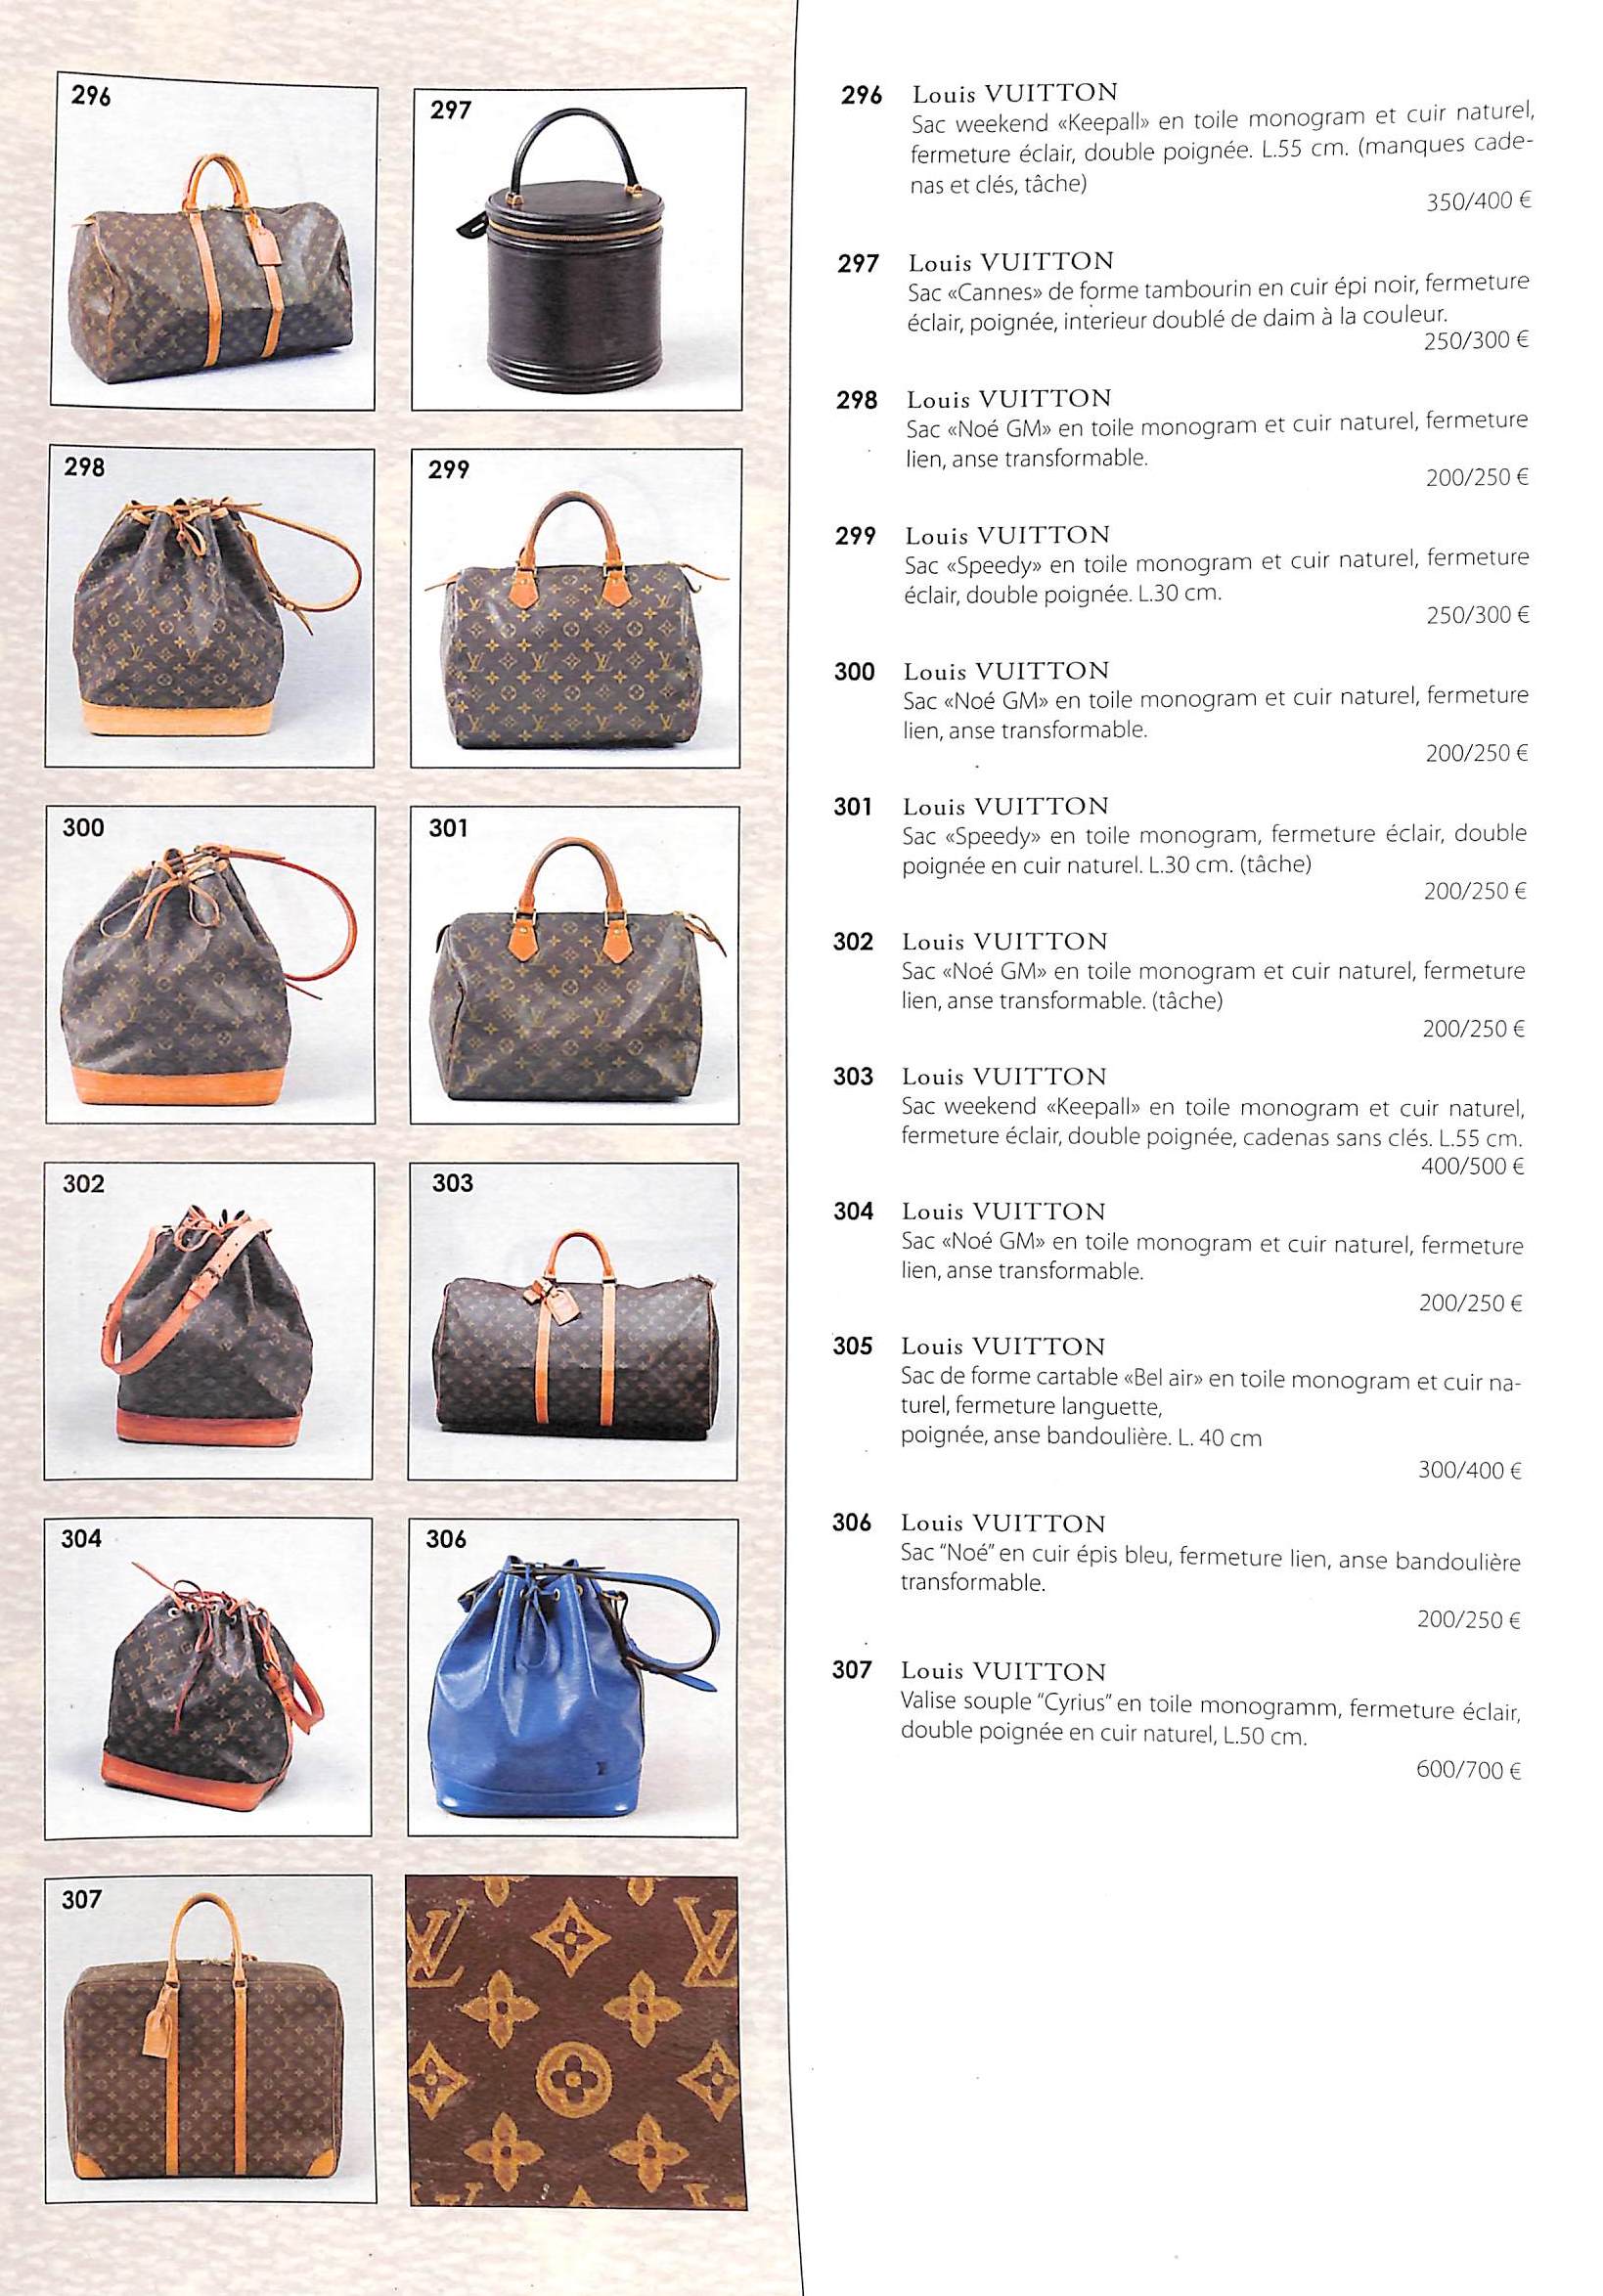 At Auction: Louis Vuitton, LOUIS VUITTON GARMENT BAG